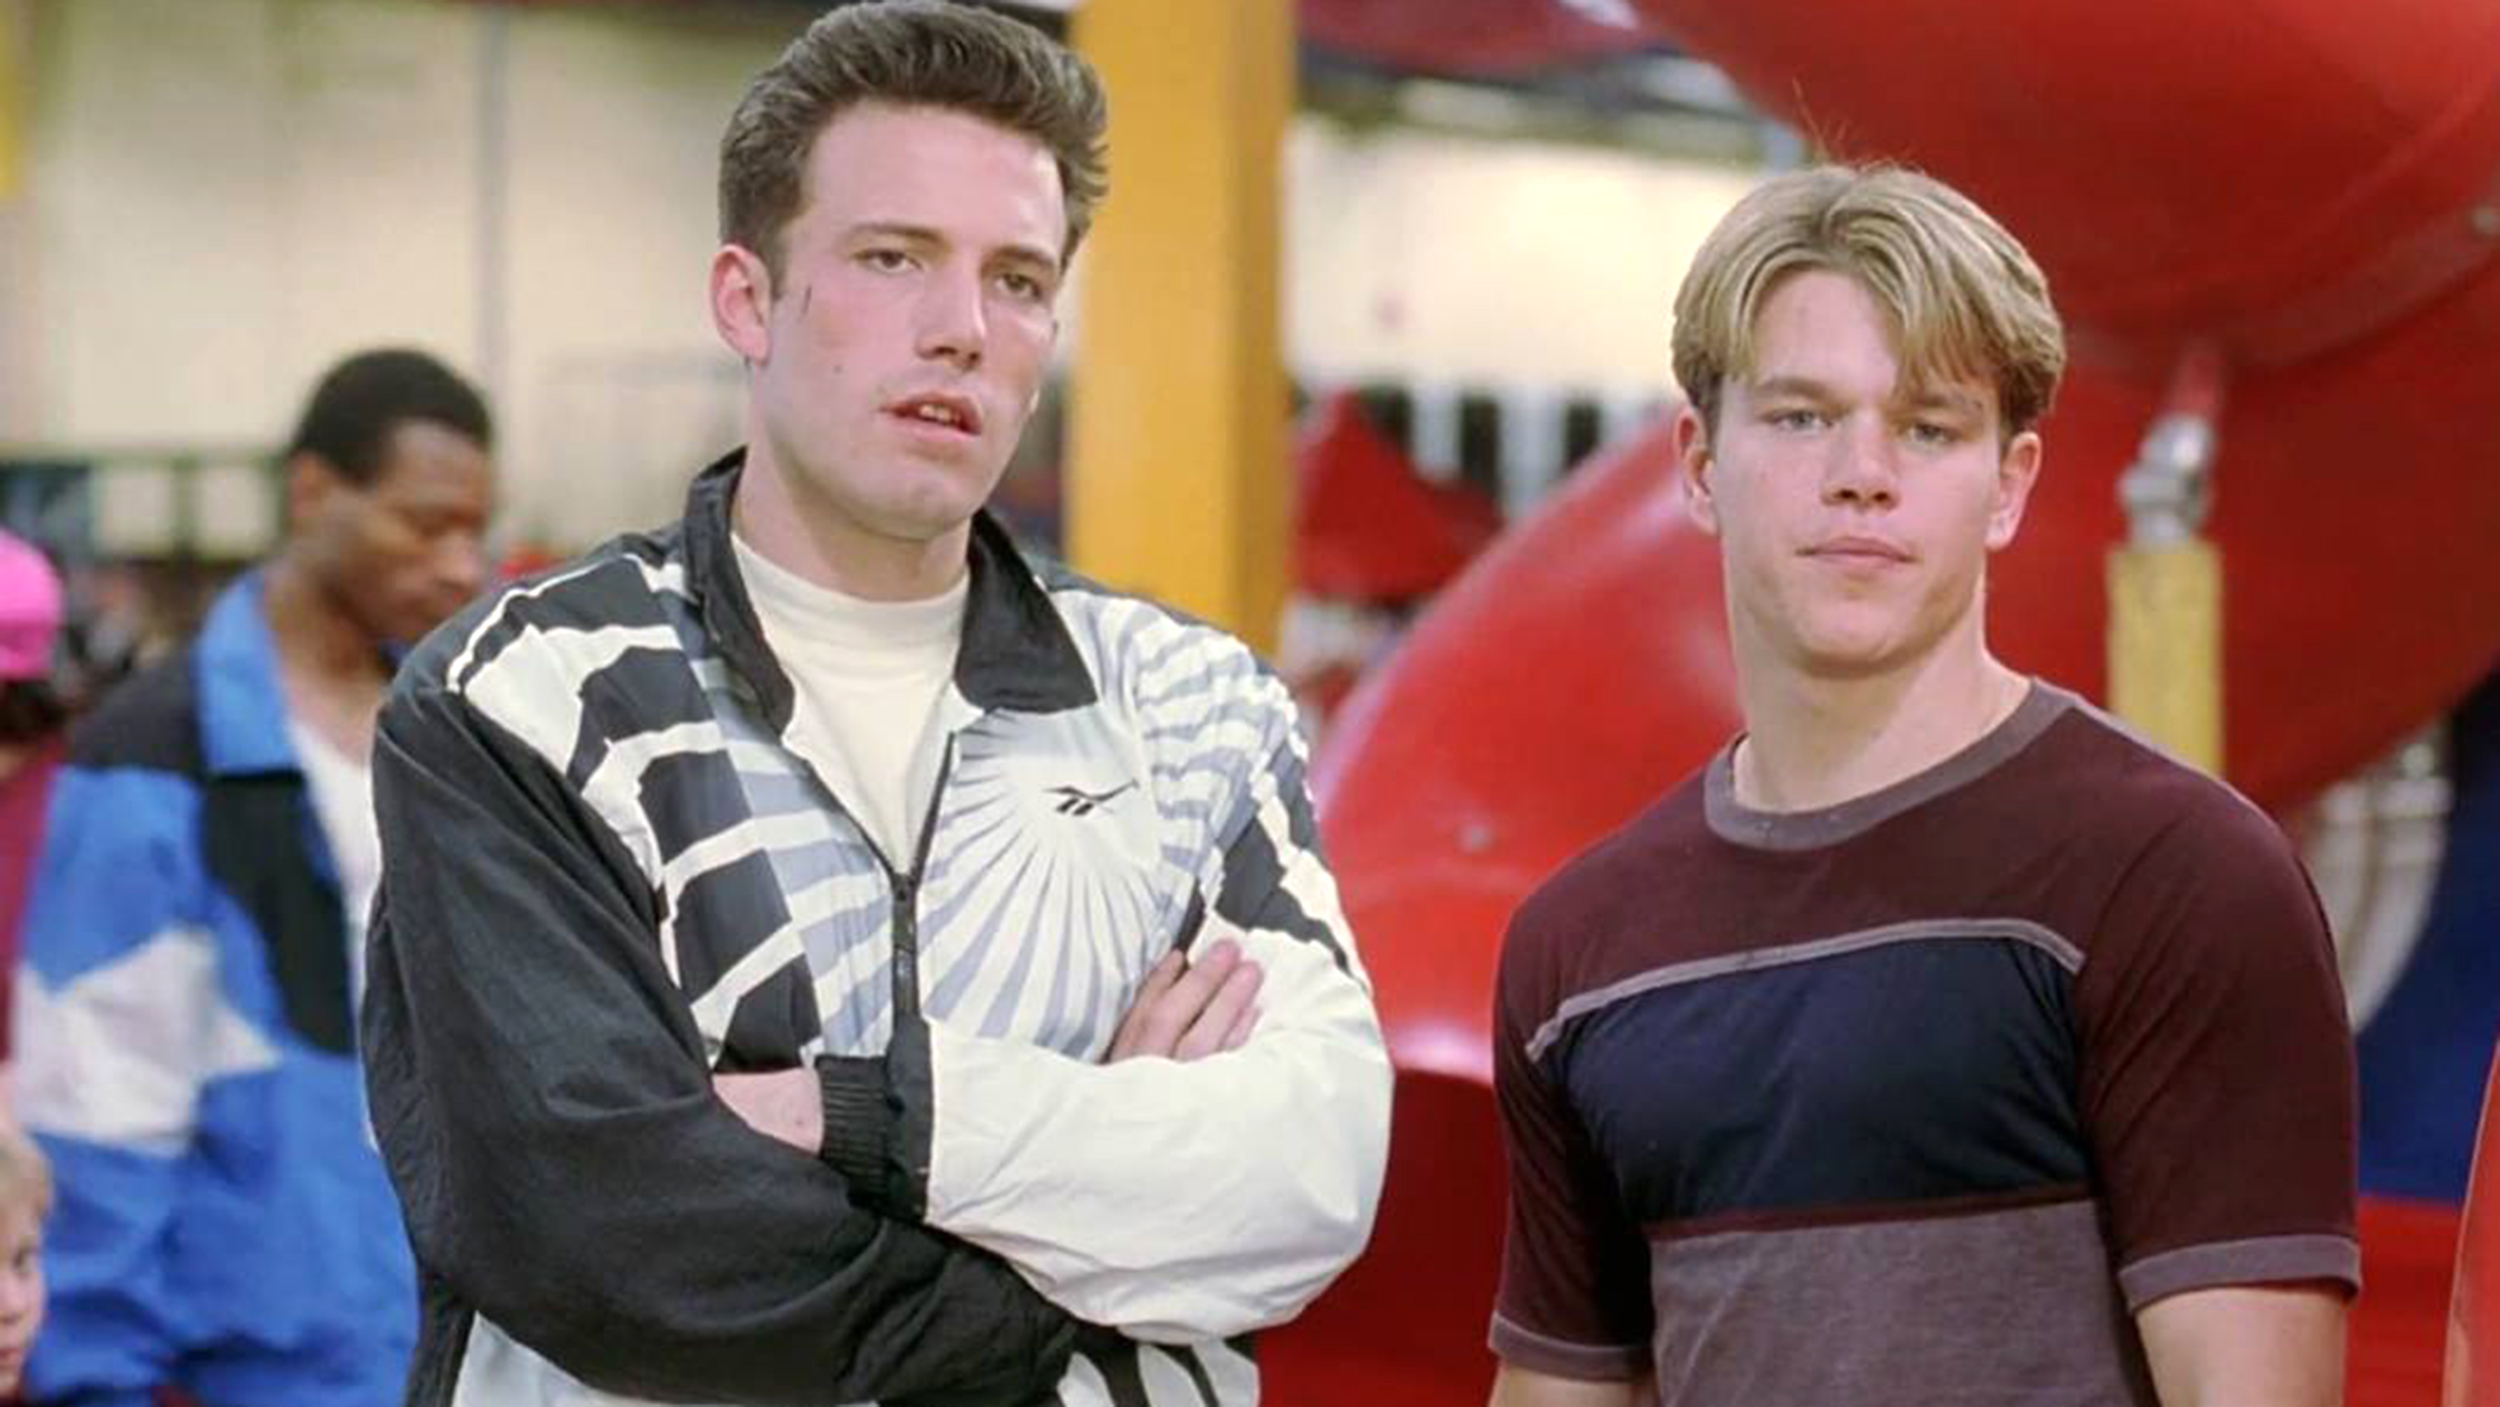 A still from Matt Damon and Ben Affleck from Good Will Hunting (1997)